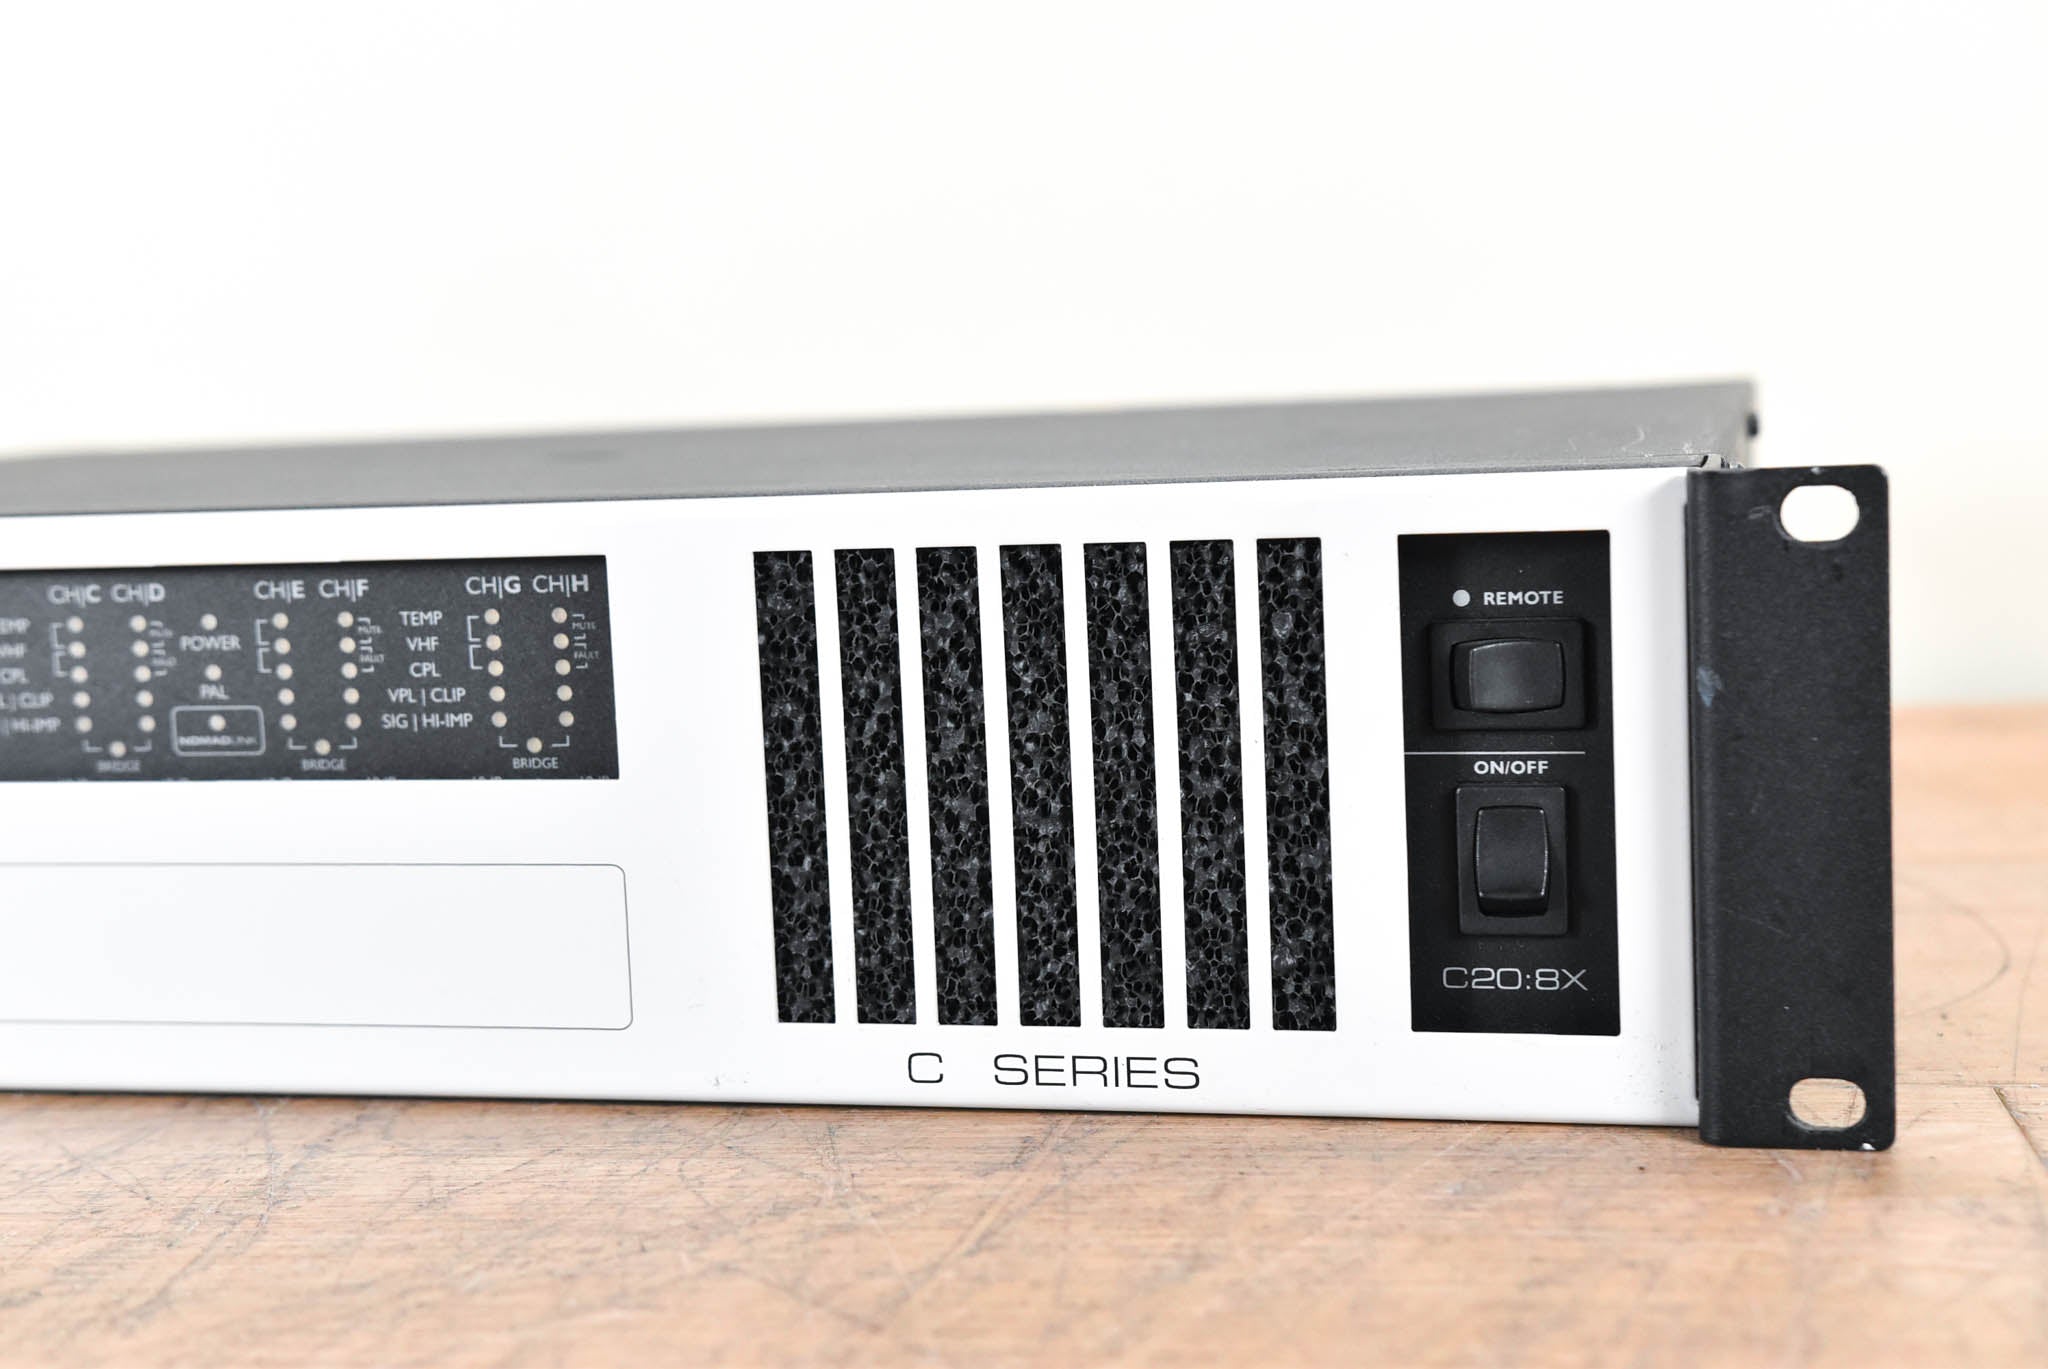 Lab Gruppen C 20:8X 2000W 8-Channel Power Amplifier